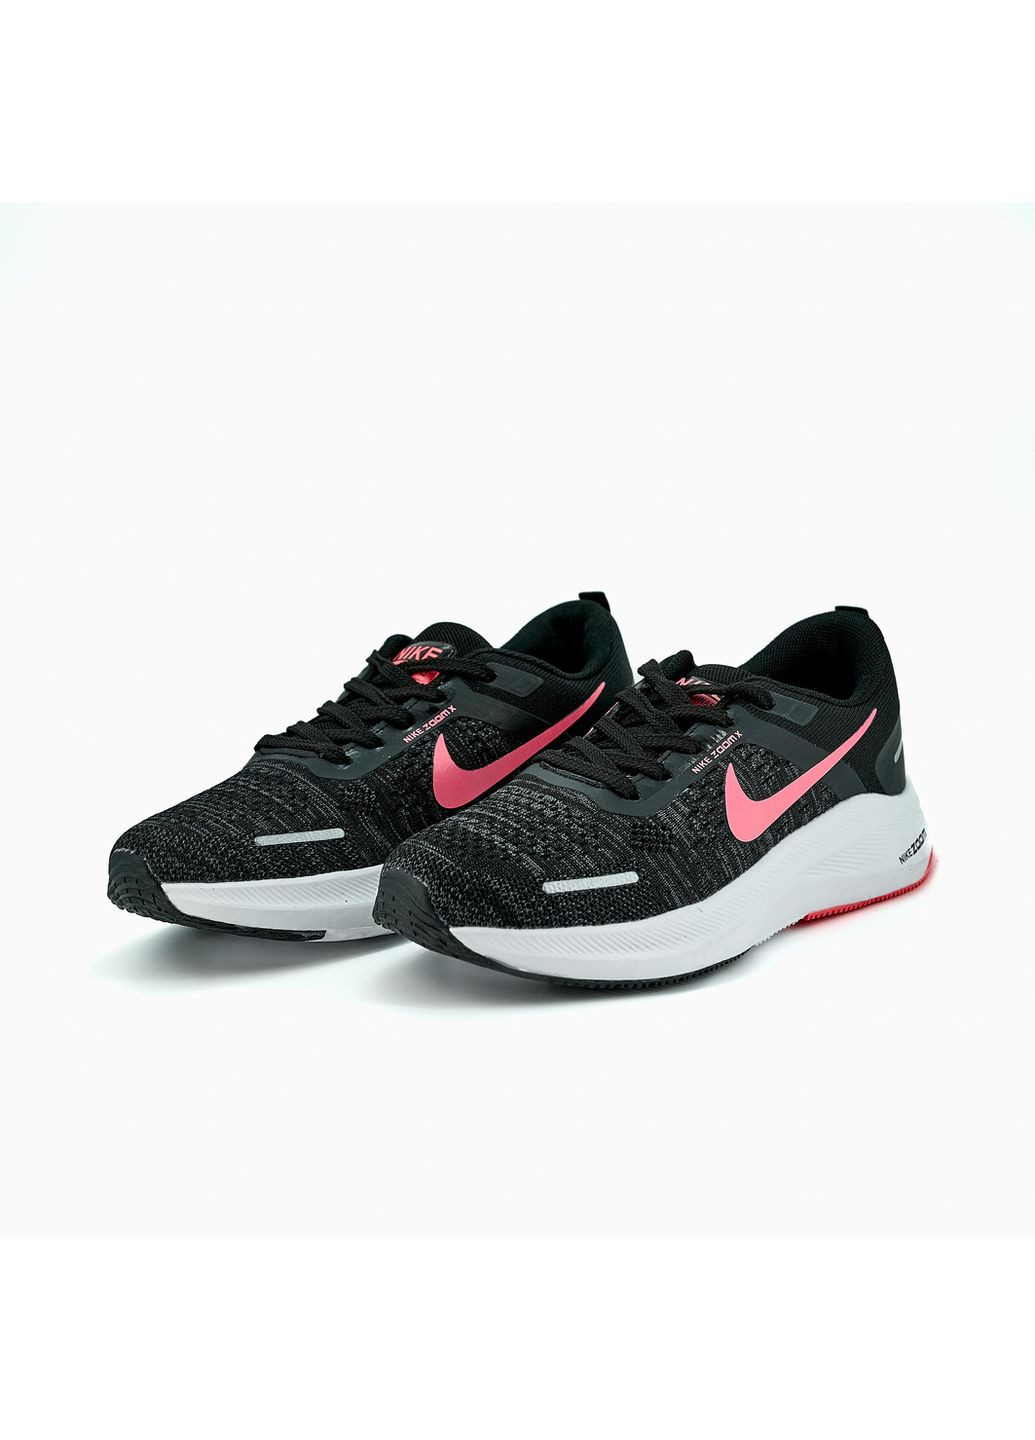 Чорні осінні кросівки жіночі zoom x black white pink, вьетнам Nike